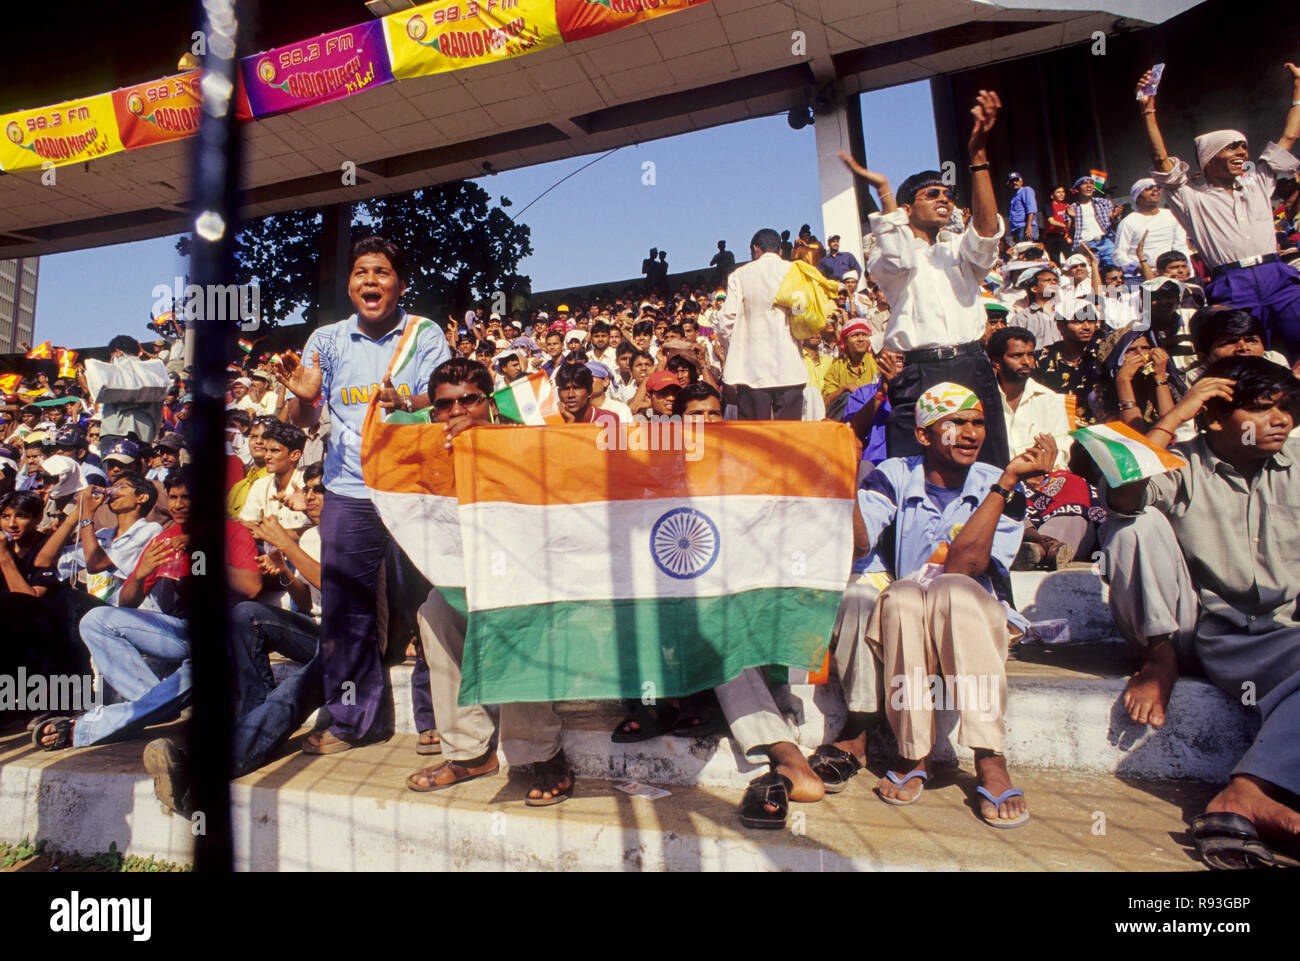 crowd at Wankhede stadium, mumbai bombay, maharashtra, india Stock Photo